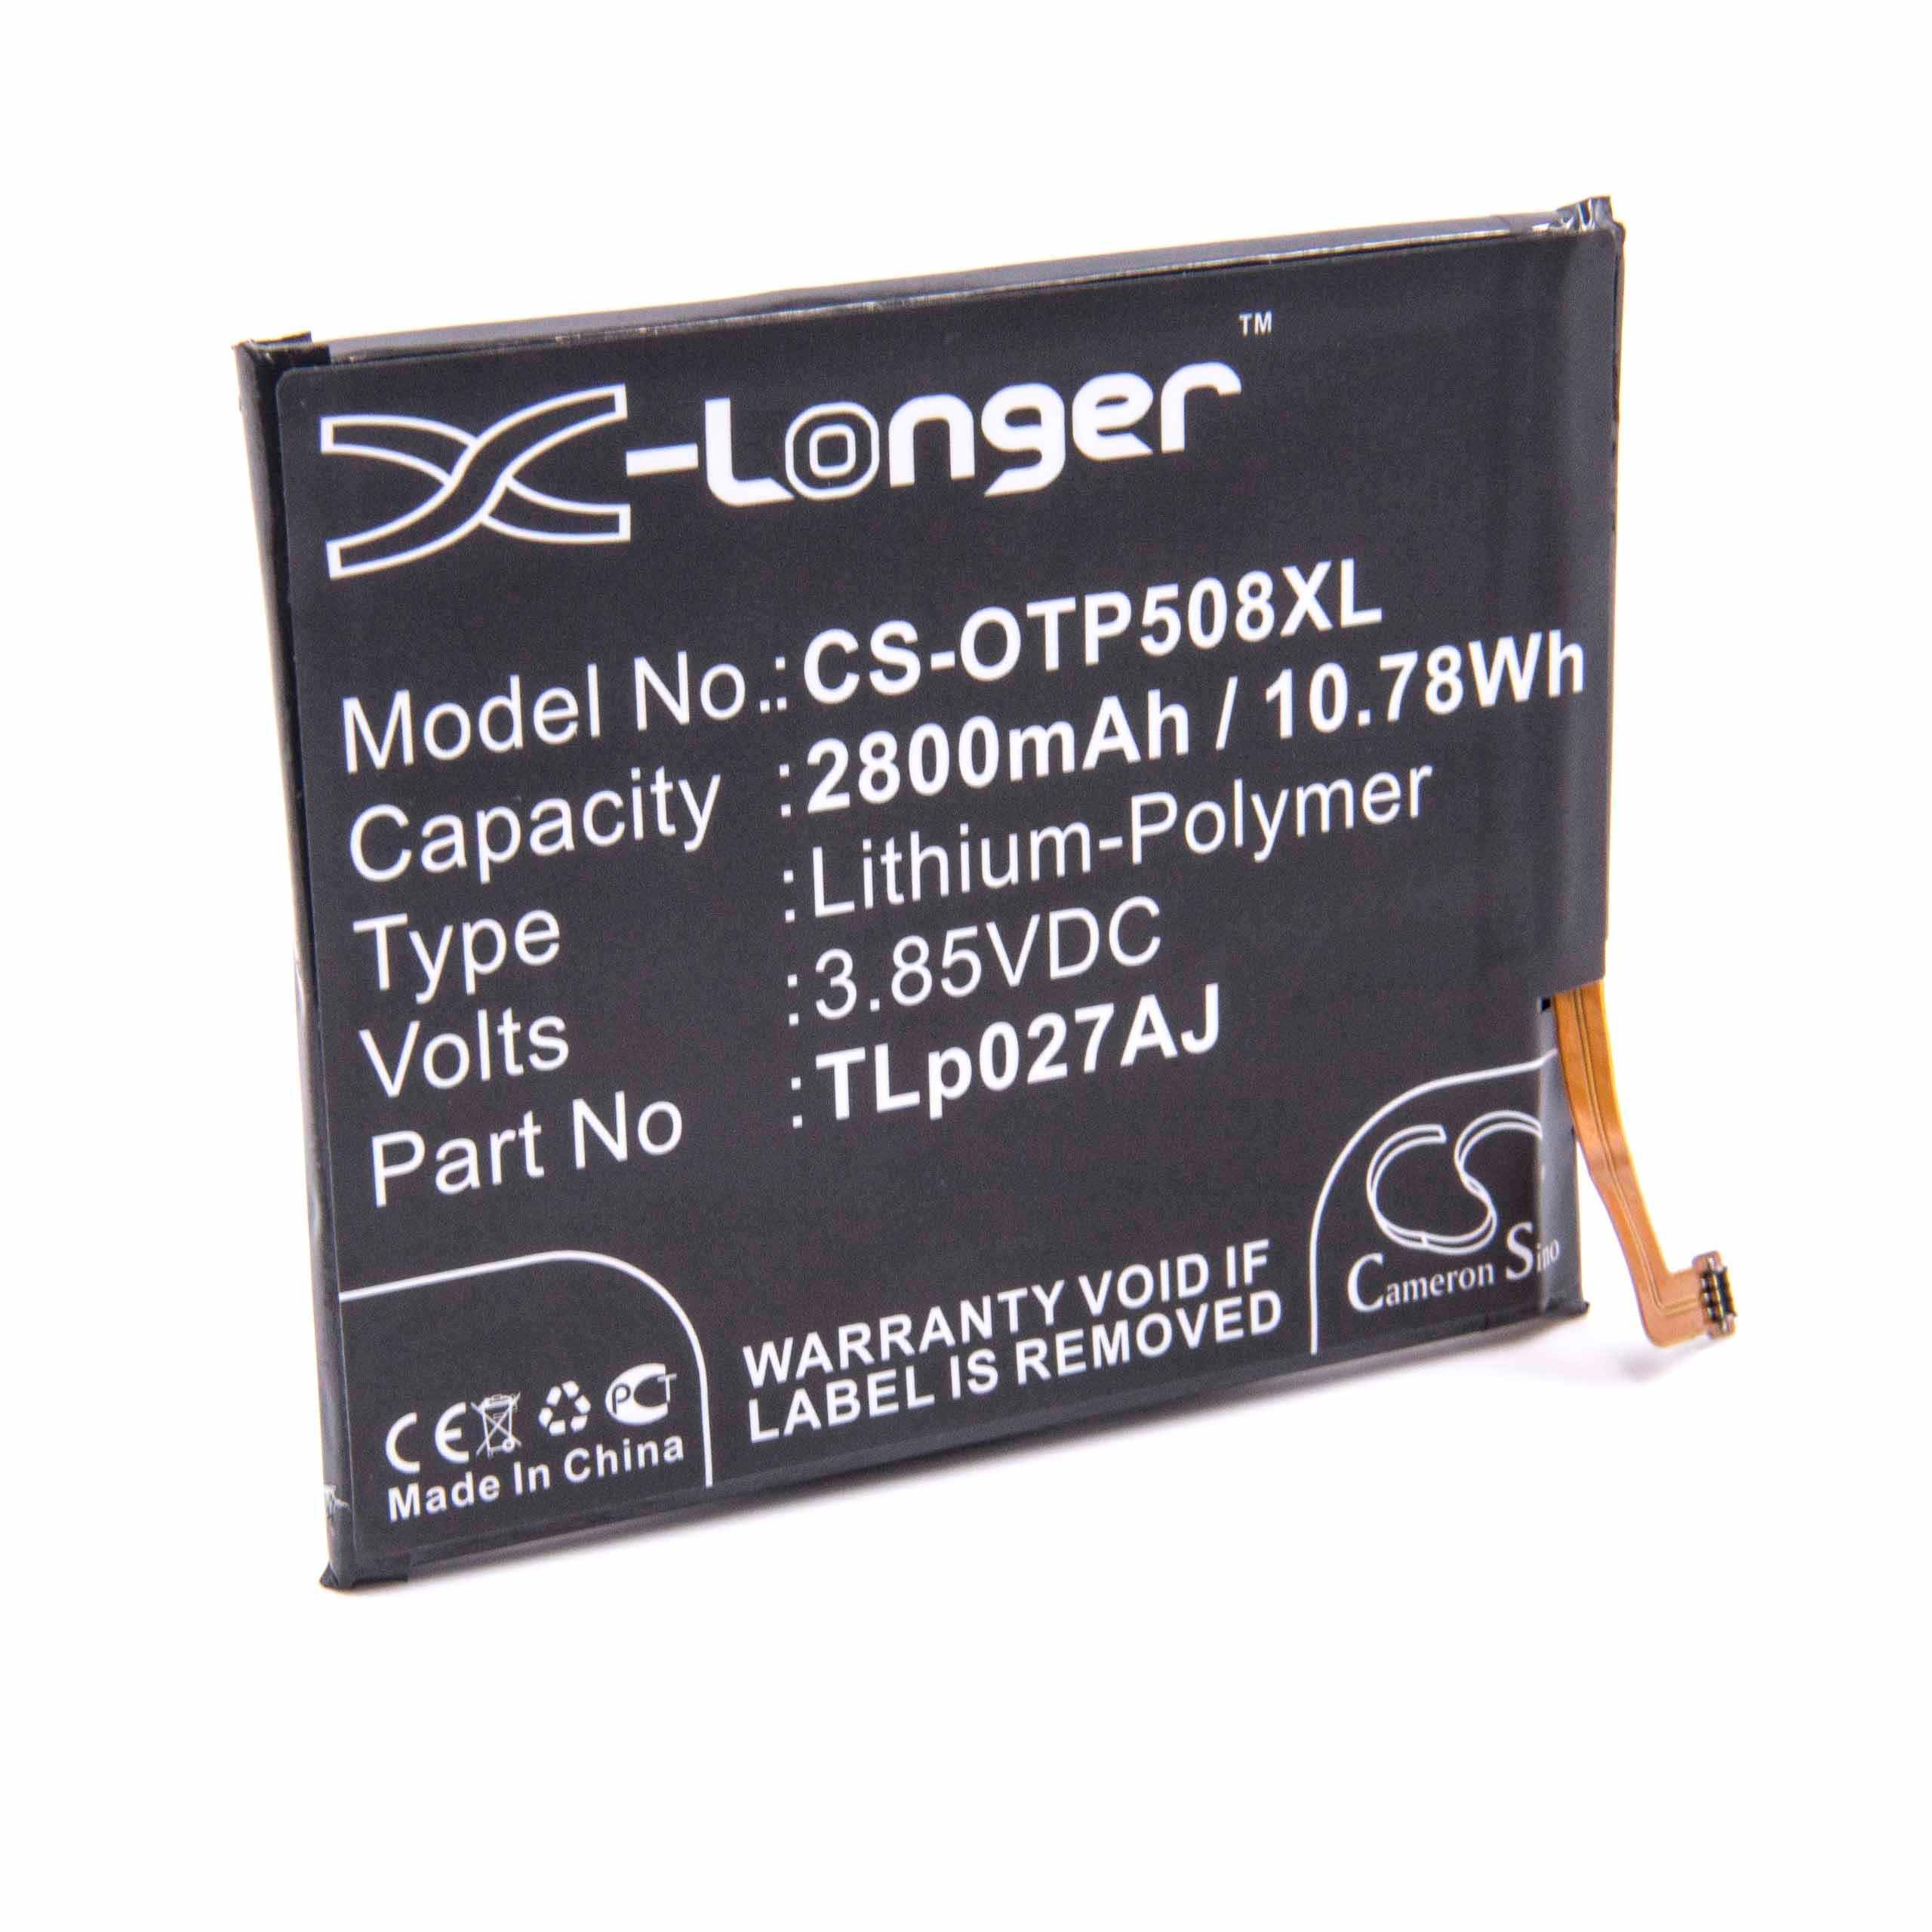 Batteria sostituisce Alcatel TLp027AJ per cellulare Alcatel - 2800mAh 3,85V Li-Poly